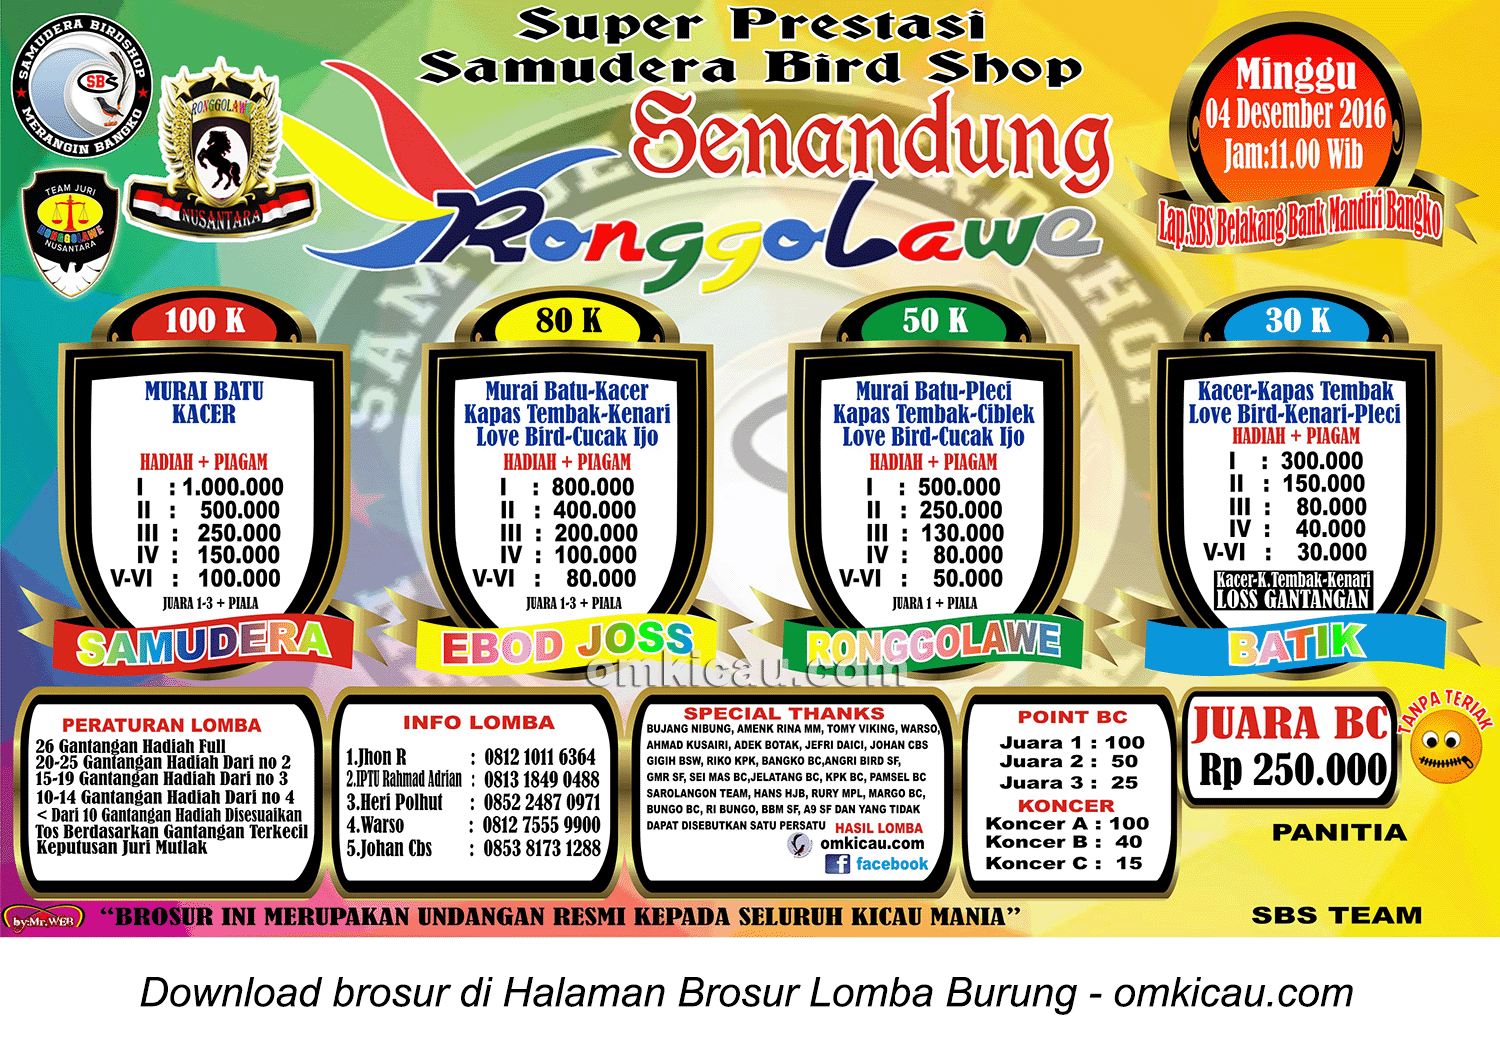 Brosur Super Prestasi Samudera Bird Shop Senandung Ronggolawe, Bangko, 4 Desember 2016